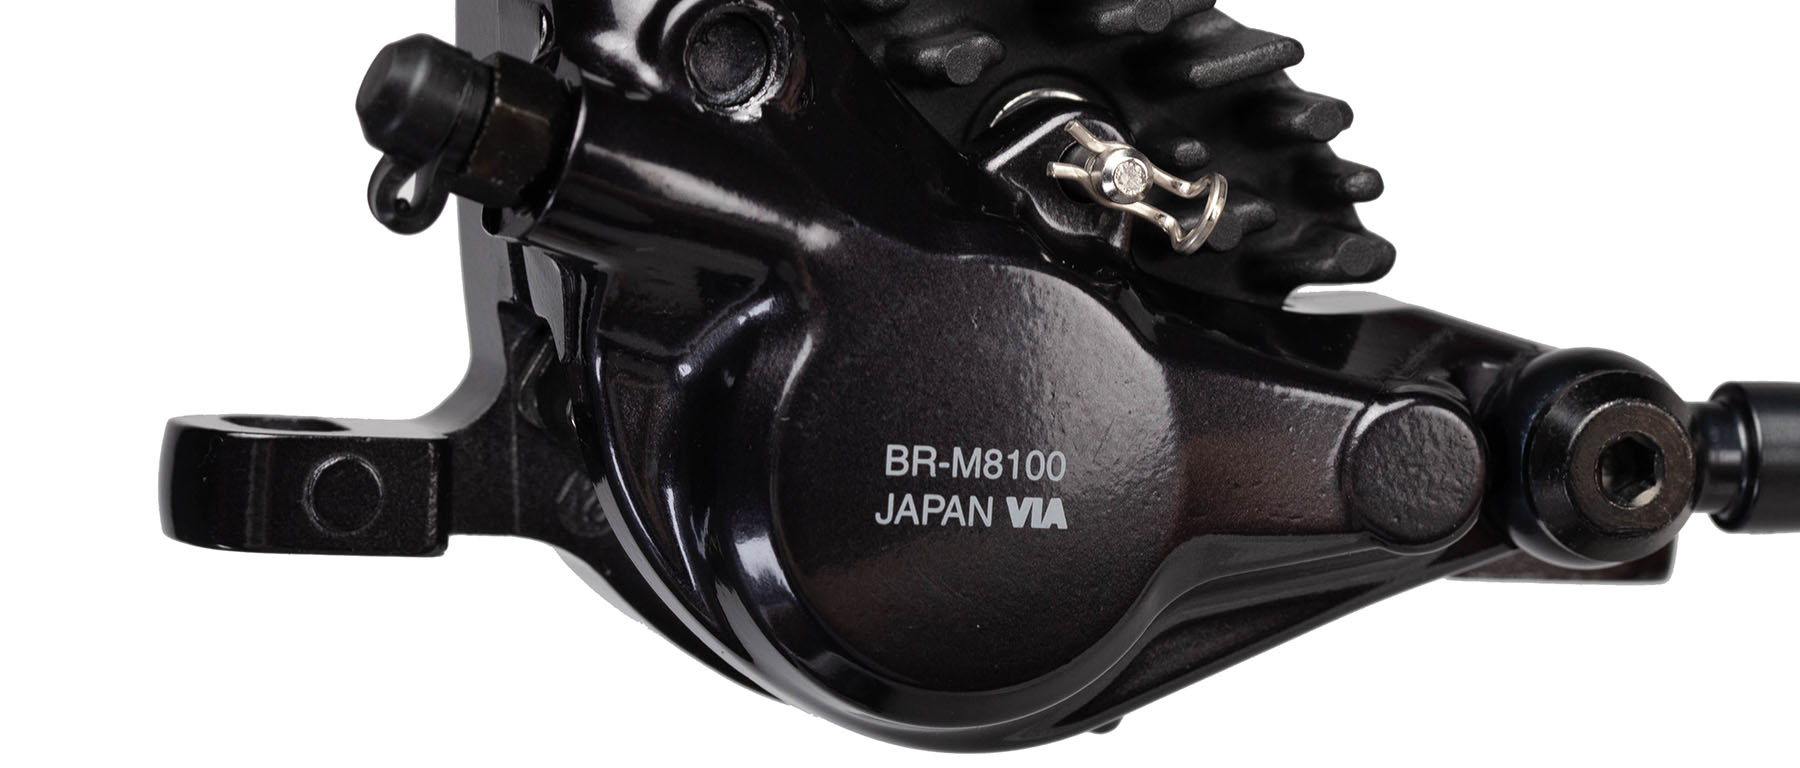 Shimano XT BR-M8100 Disc Brake